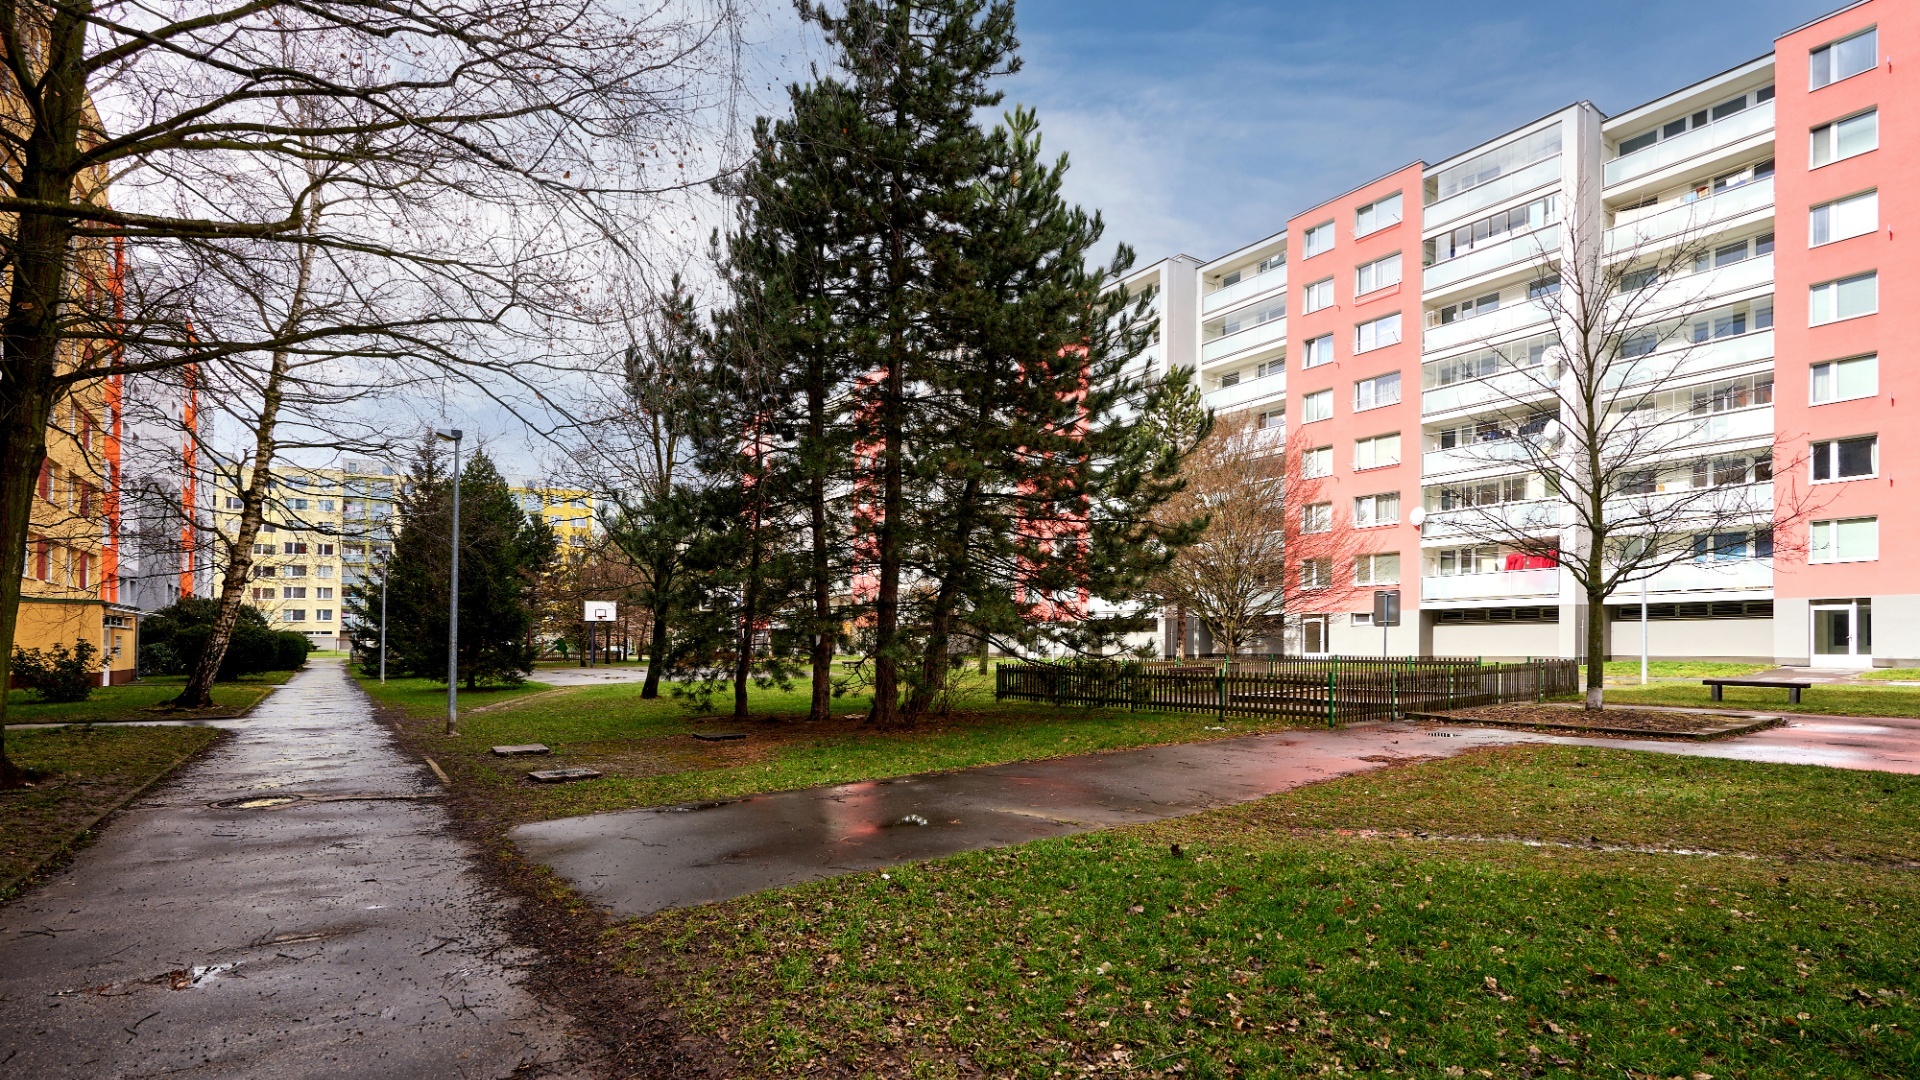 Pronájem bytu 2+kk, 44 m², Praha 20 - Horní Počernice, ulice Pavlišovská 